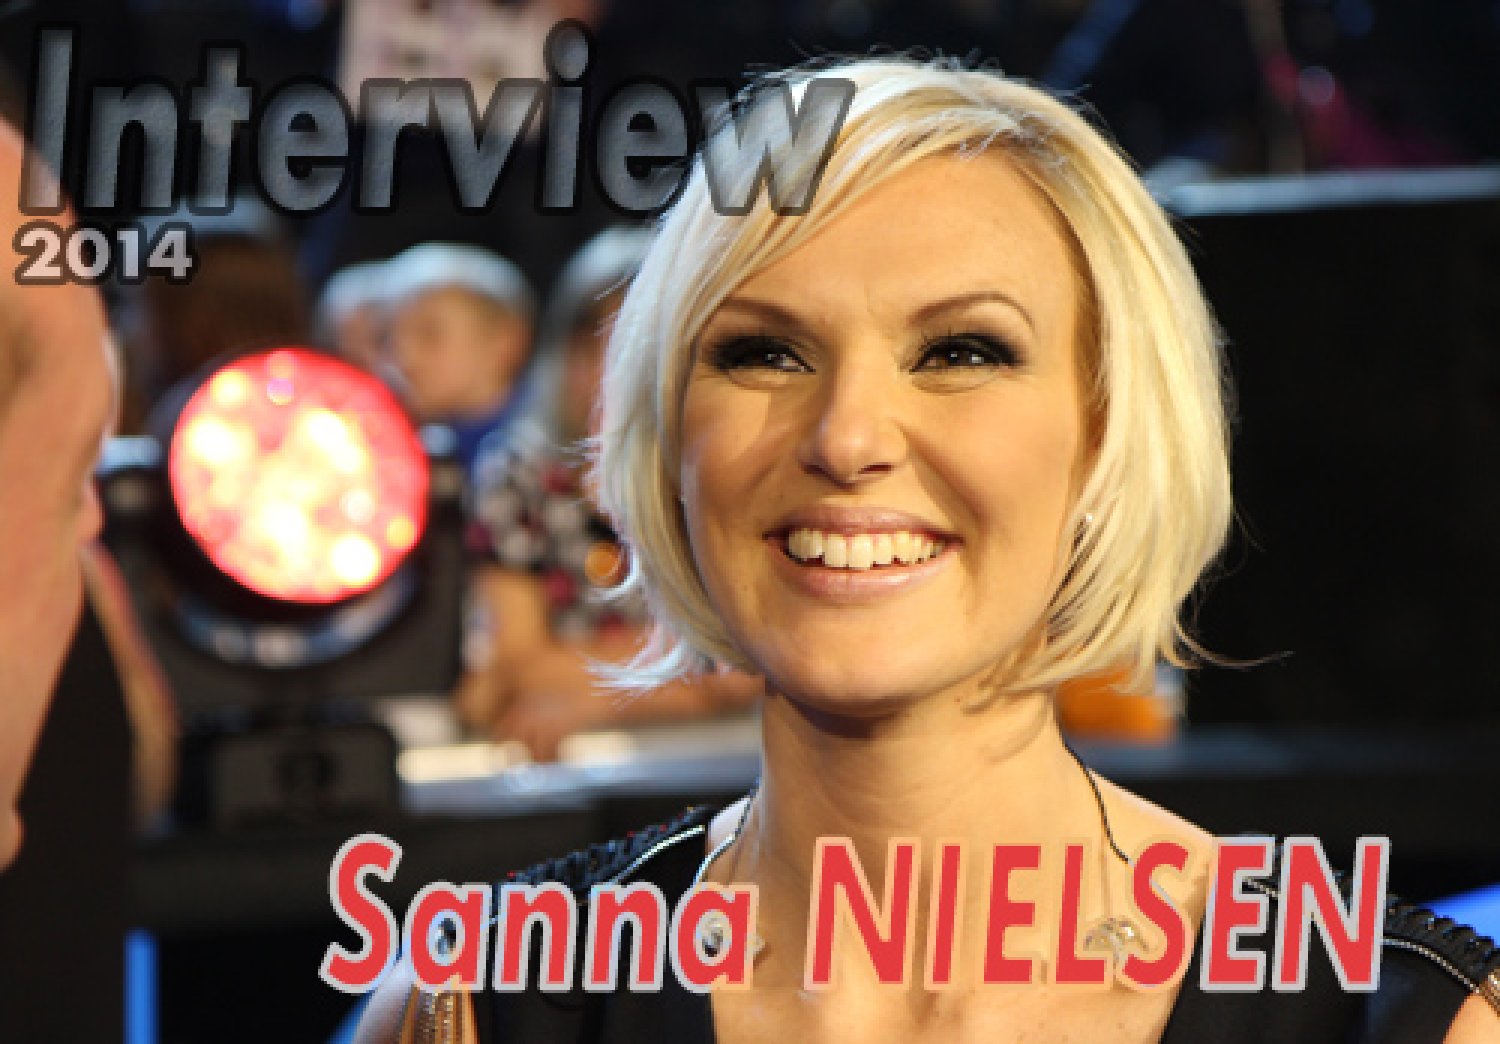 Sanna Nielsen (Interview 2014)